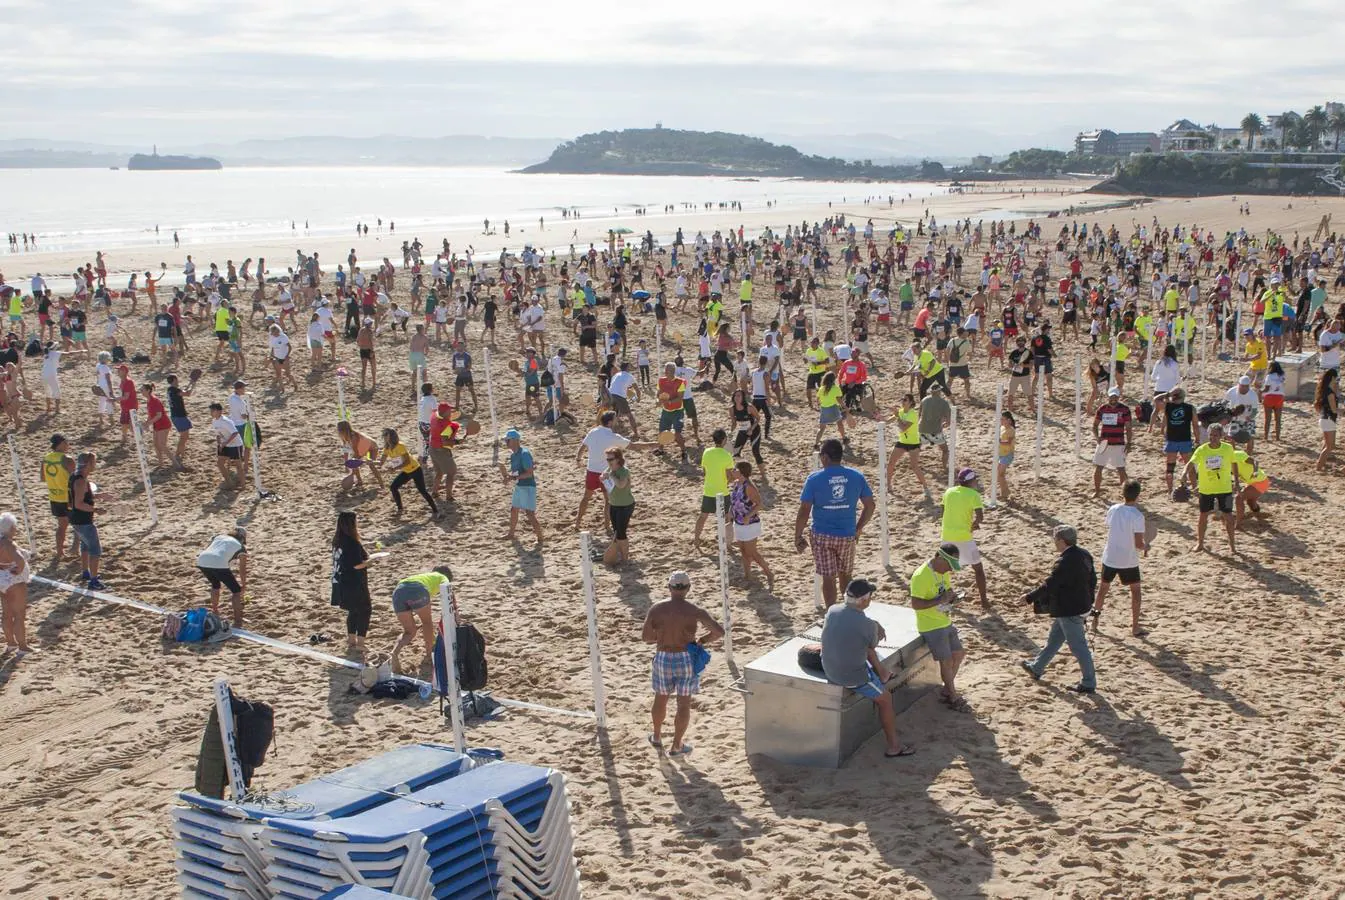 La segunda playa del Sardinero acoge el Campeonato Mundial Palas Santander 2017, en el que además de competir se trata de batir los récords mundiales de reunir a 2.000 personas jugando simultáneamente durante 80 horas seguidas.